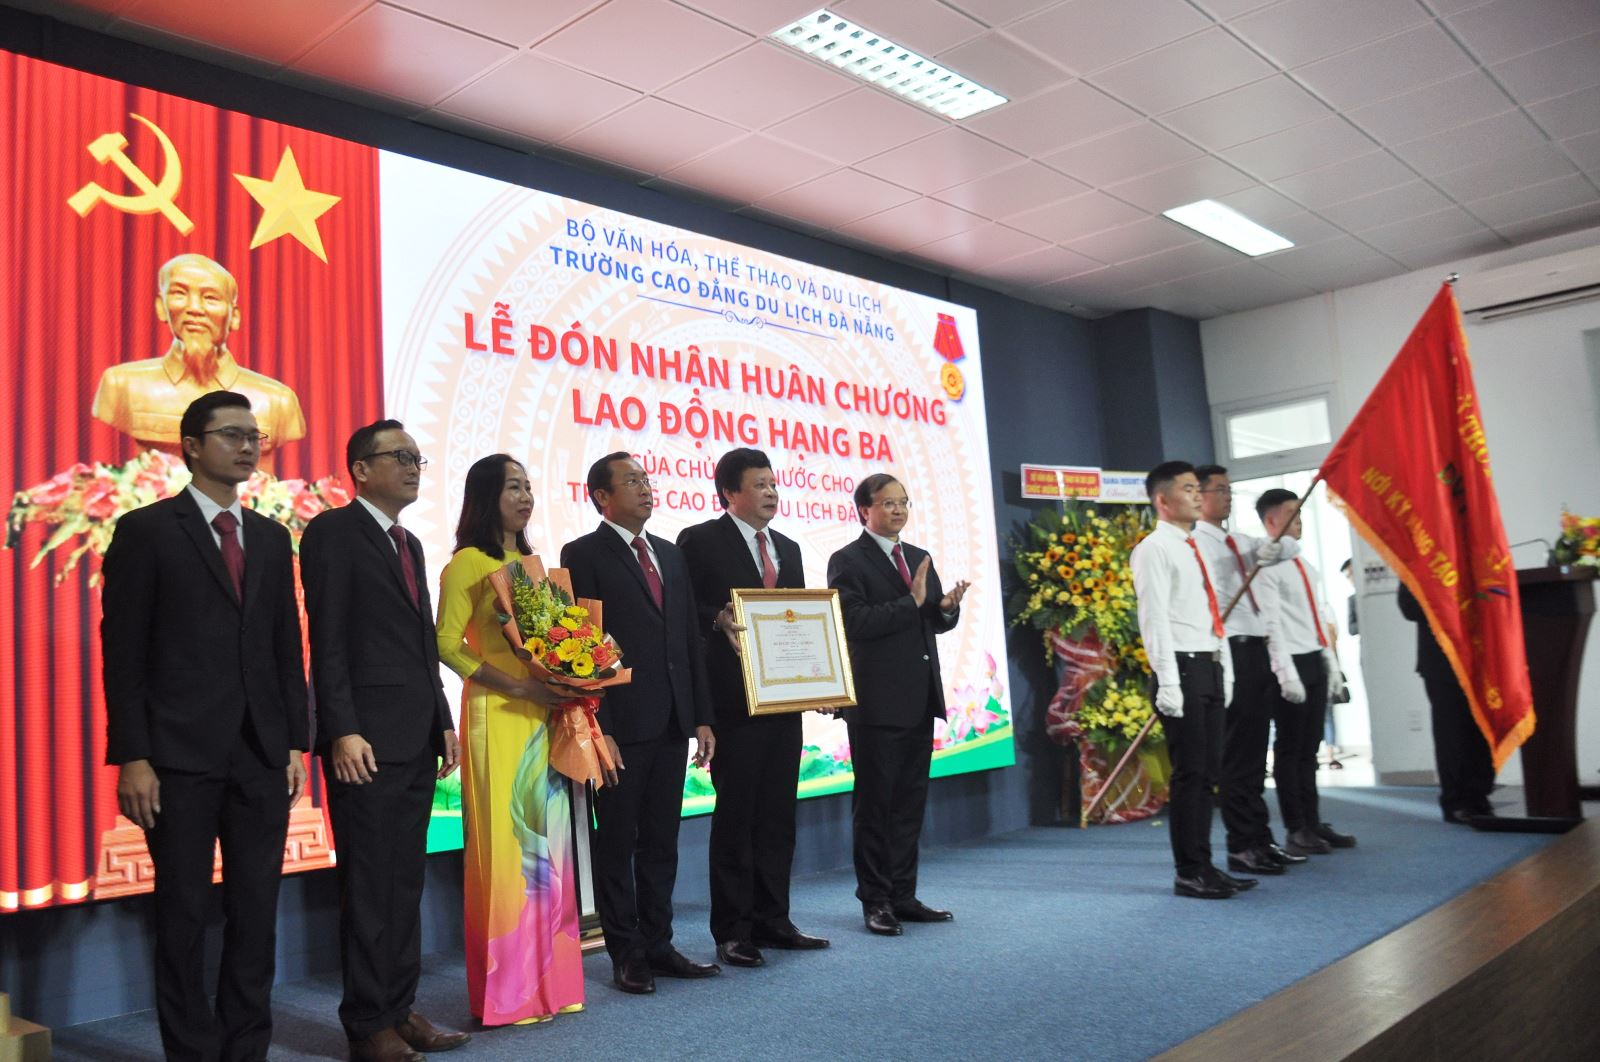 Trường Cao đẳng Du lịch Đà Nẵng đón nhận Huân chương Lao động và khai giảng năm học mới